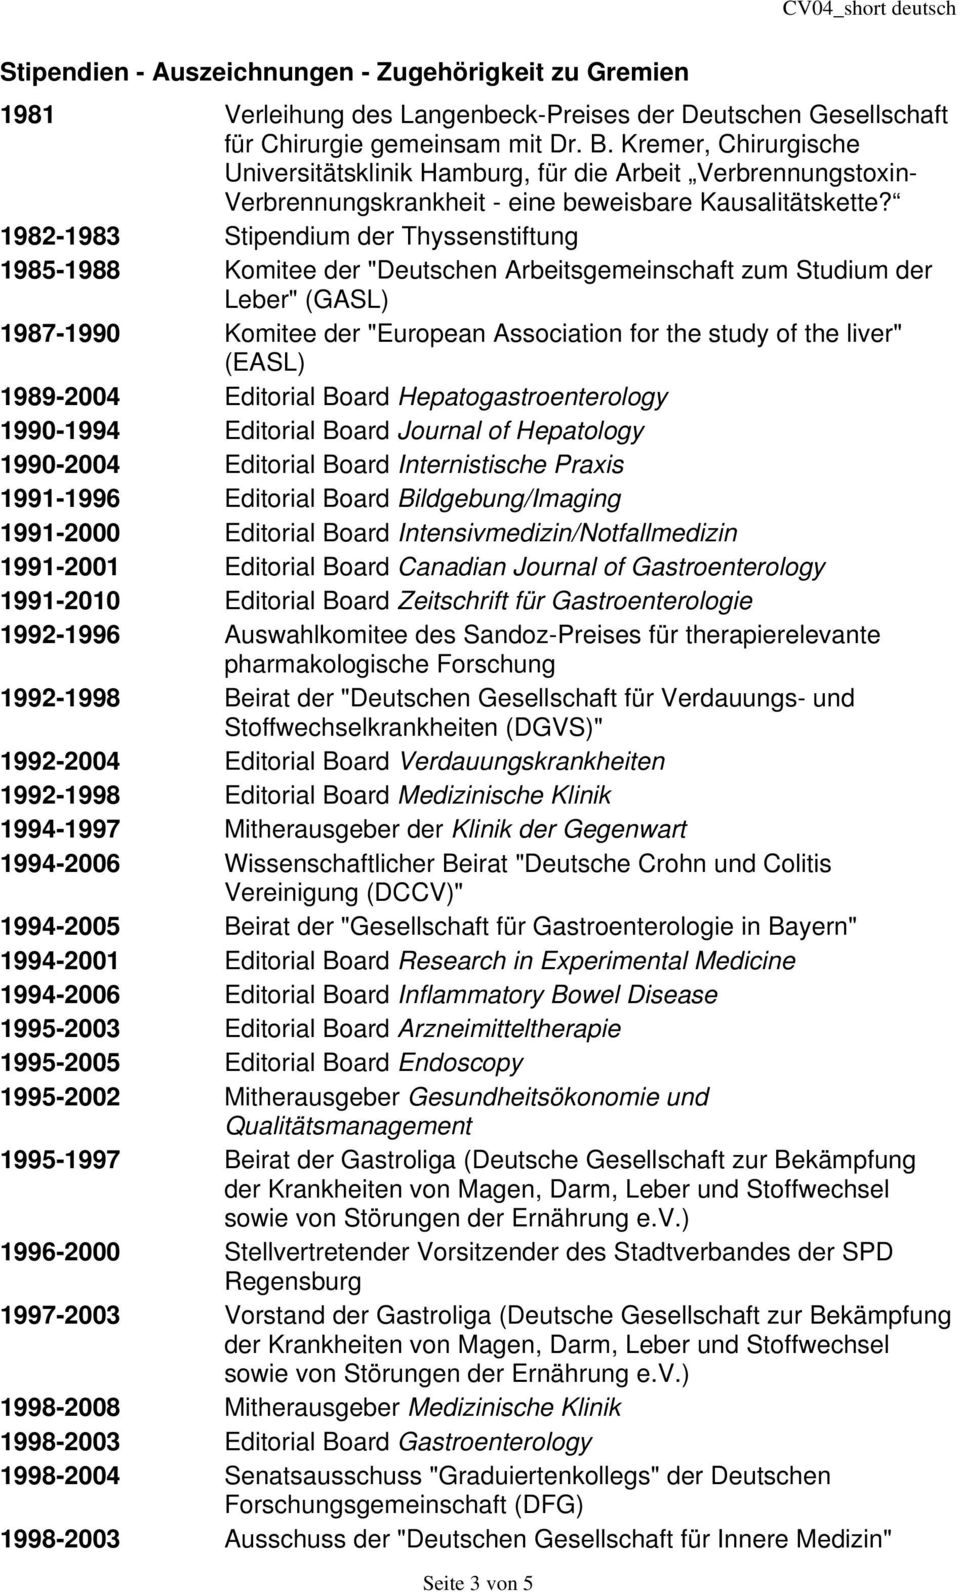 1982-1983 Stipendium der Thyssenstiftung 1985-1988 Komitee der "Deutschen Arbeitsgemeinschaft zum Studium der Leber" (GASL) 1987-1990 Komitee der "European Association for the study of the liver"